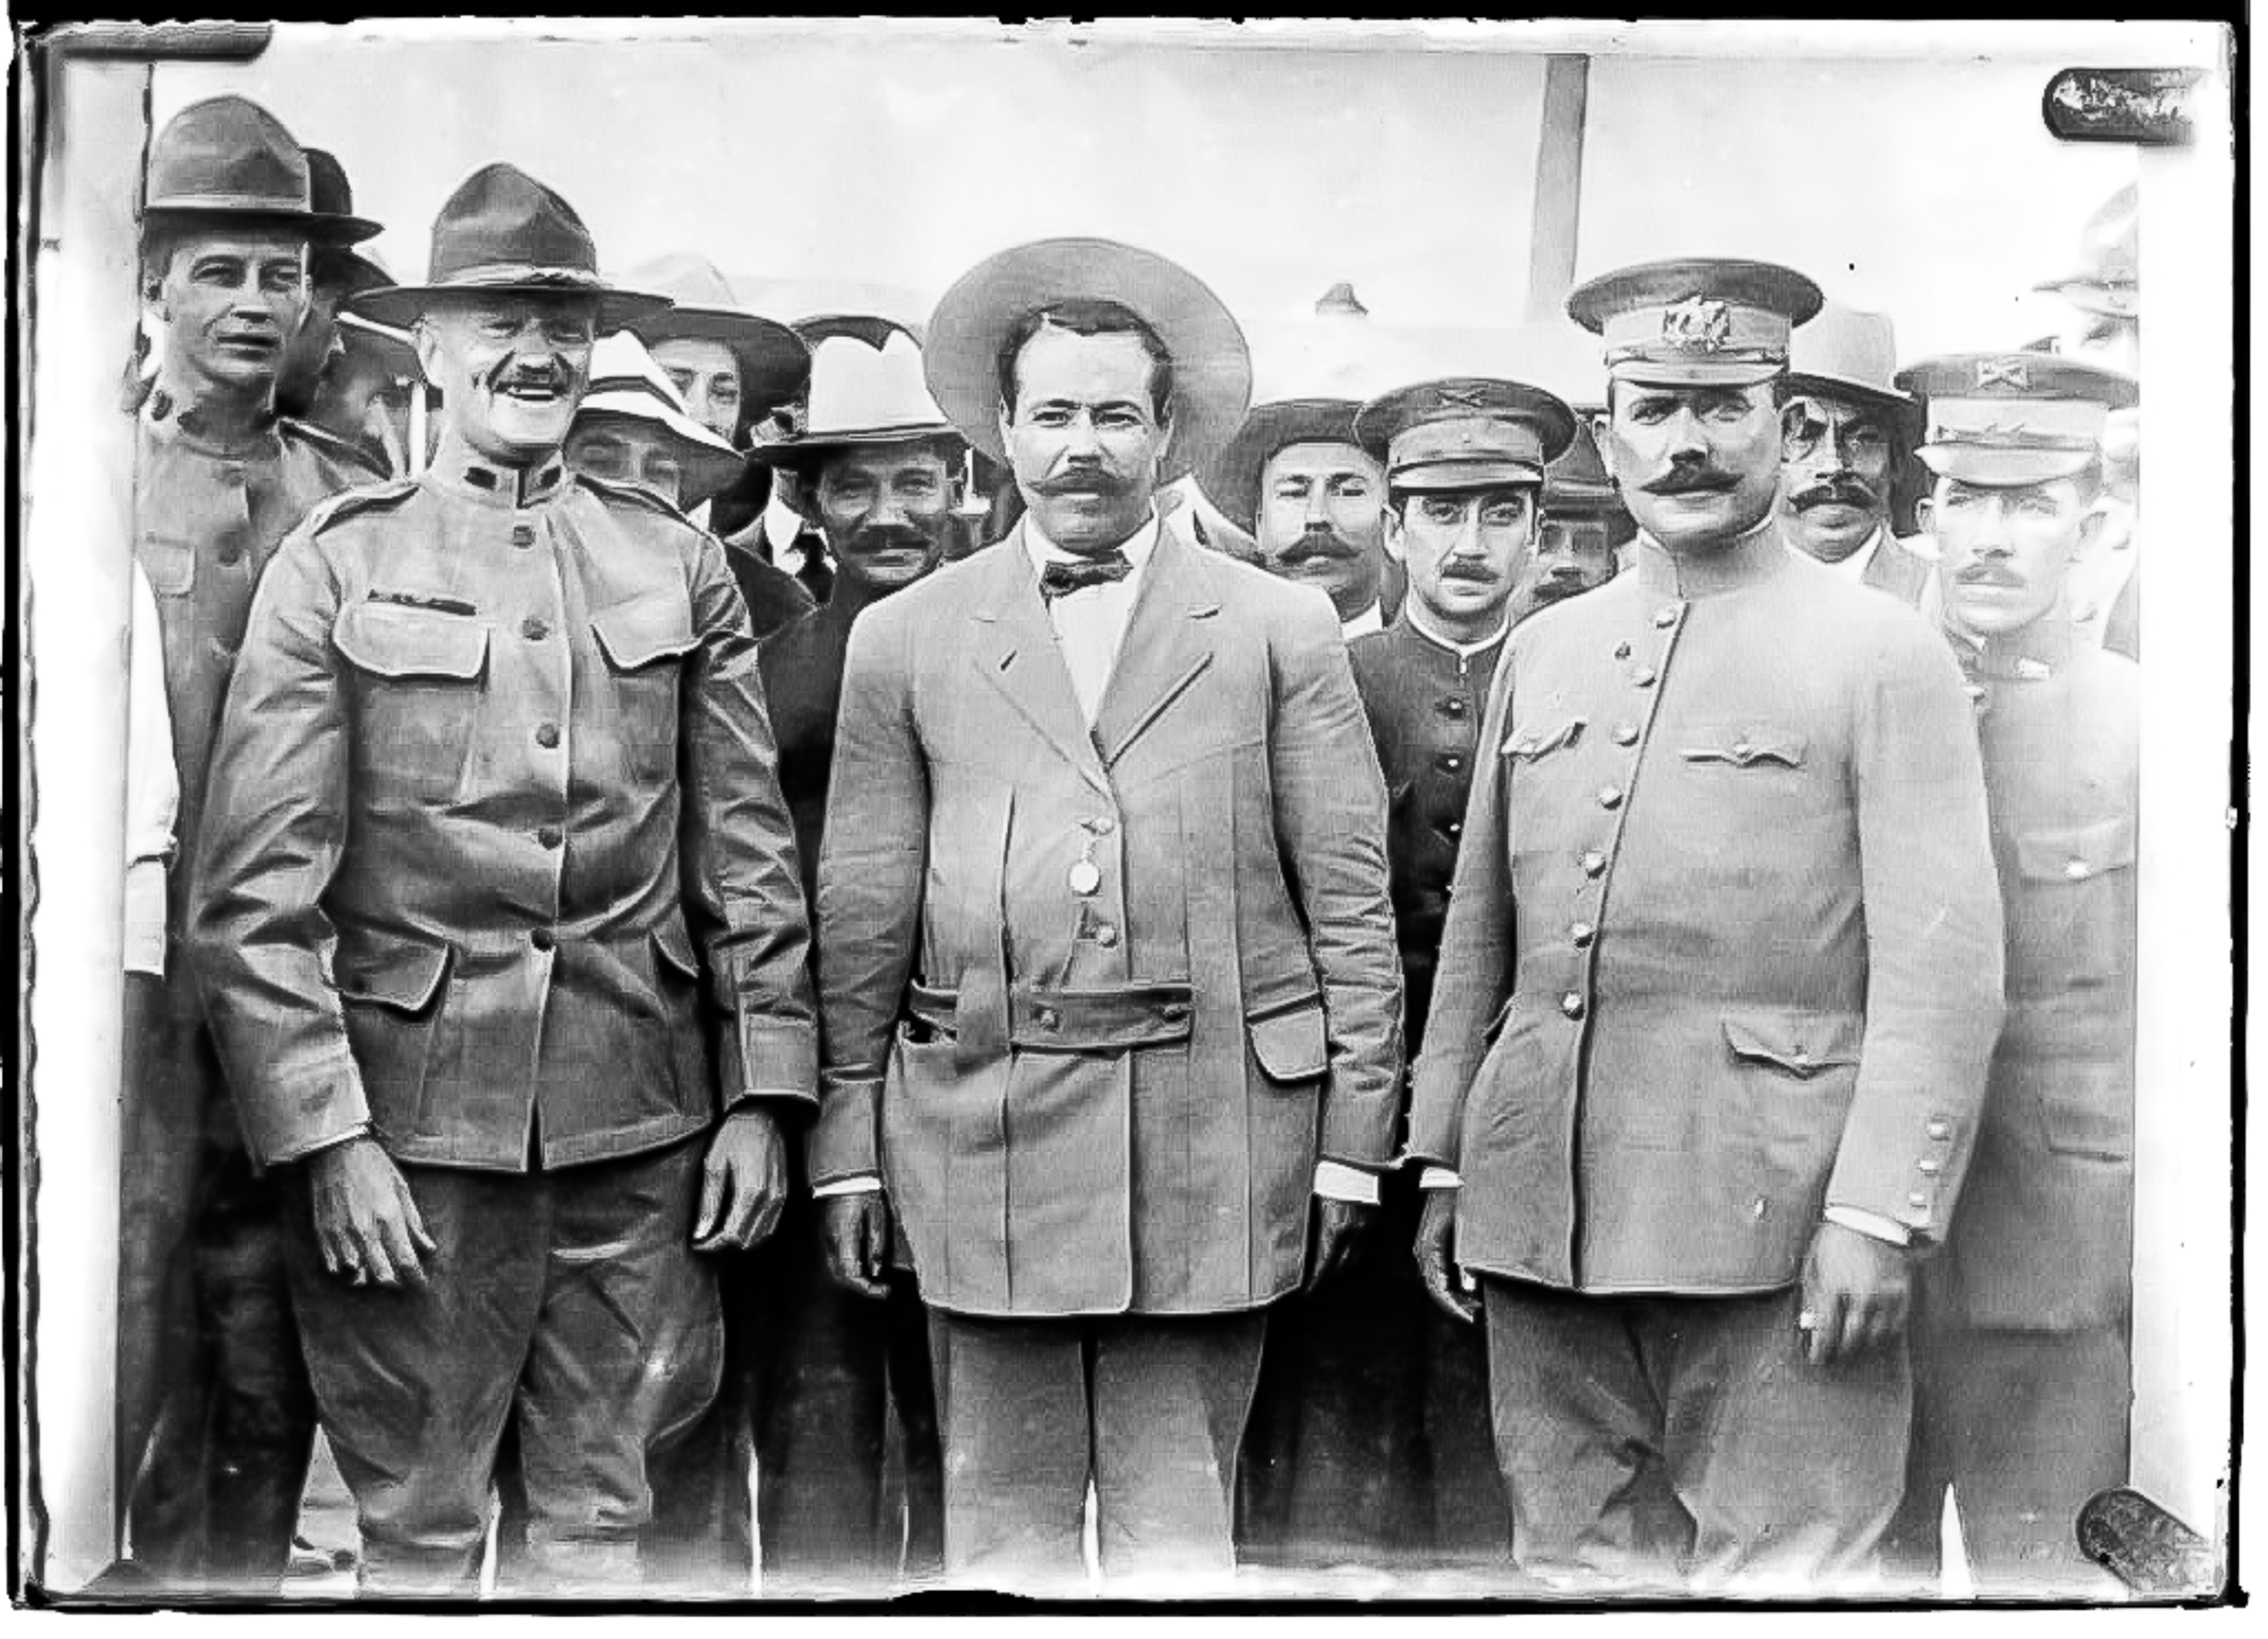 En esta fotografía de 1915 aparecen Pancho Villa, John Pershing y Álvaro Obregón. Los tres generales posaron después de una reunión en la base militar de Fort Bliss, Texas. Villa y Pershing más tarde se convertirían en adversarios.